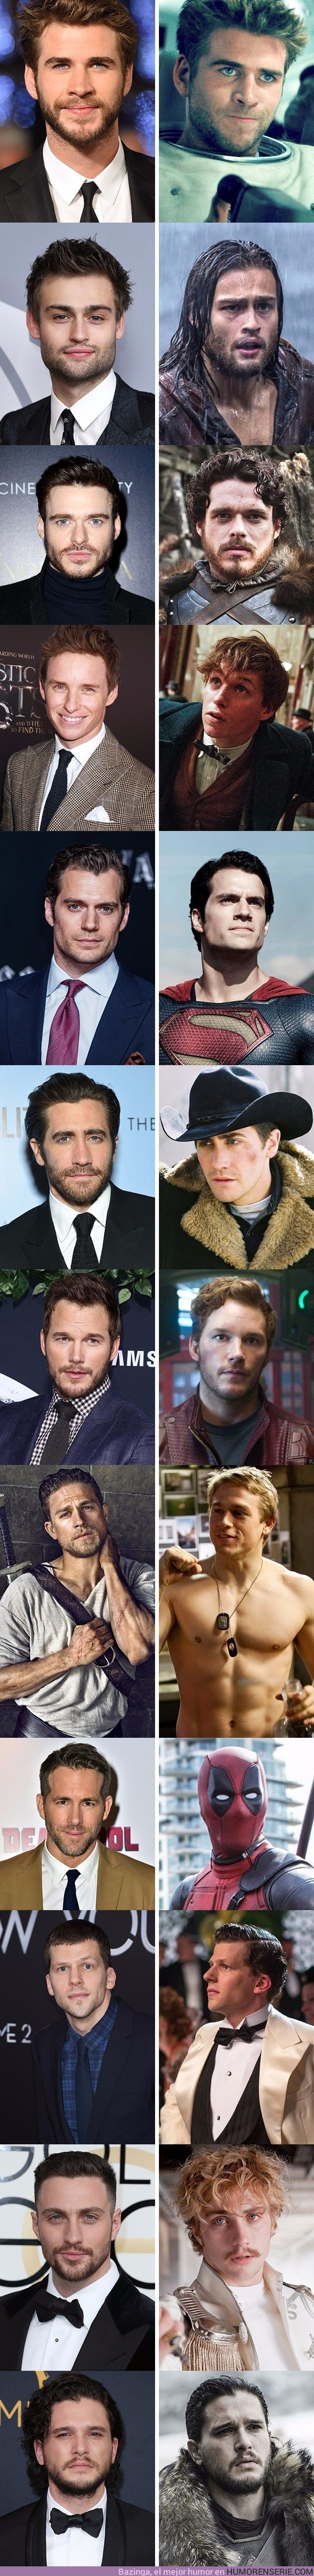 16205 - Los 11 actores más guapos de Hollywood